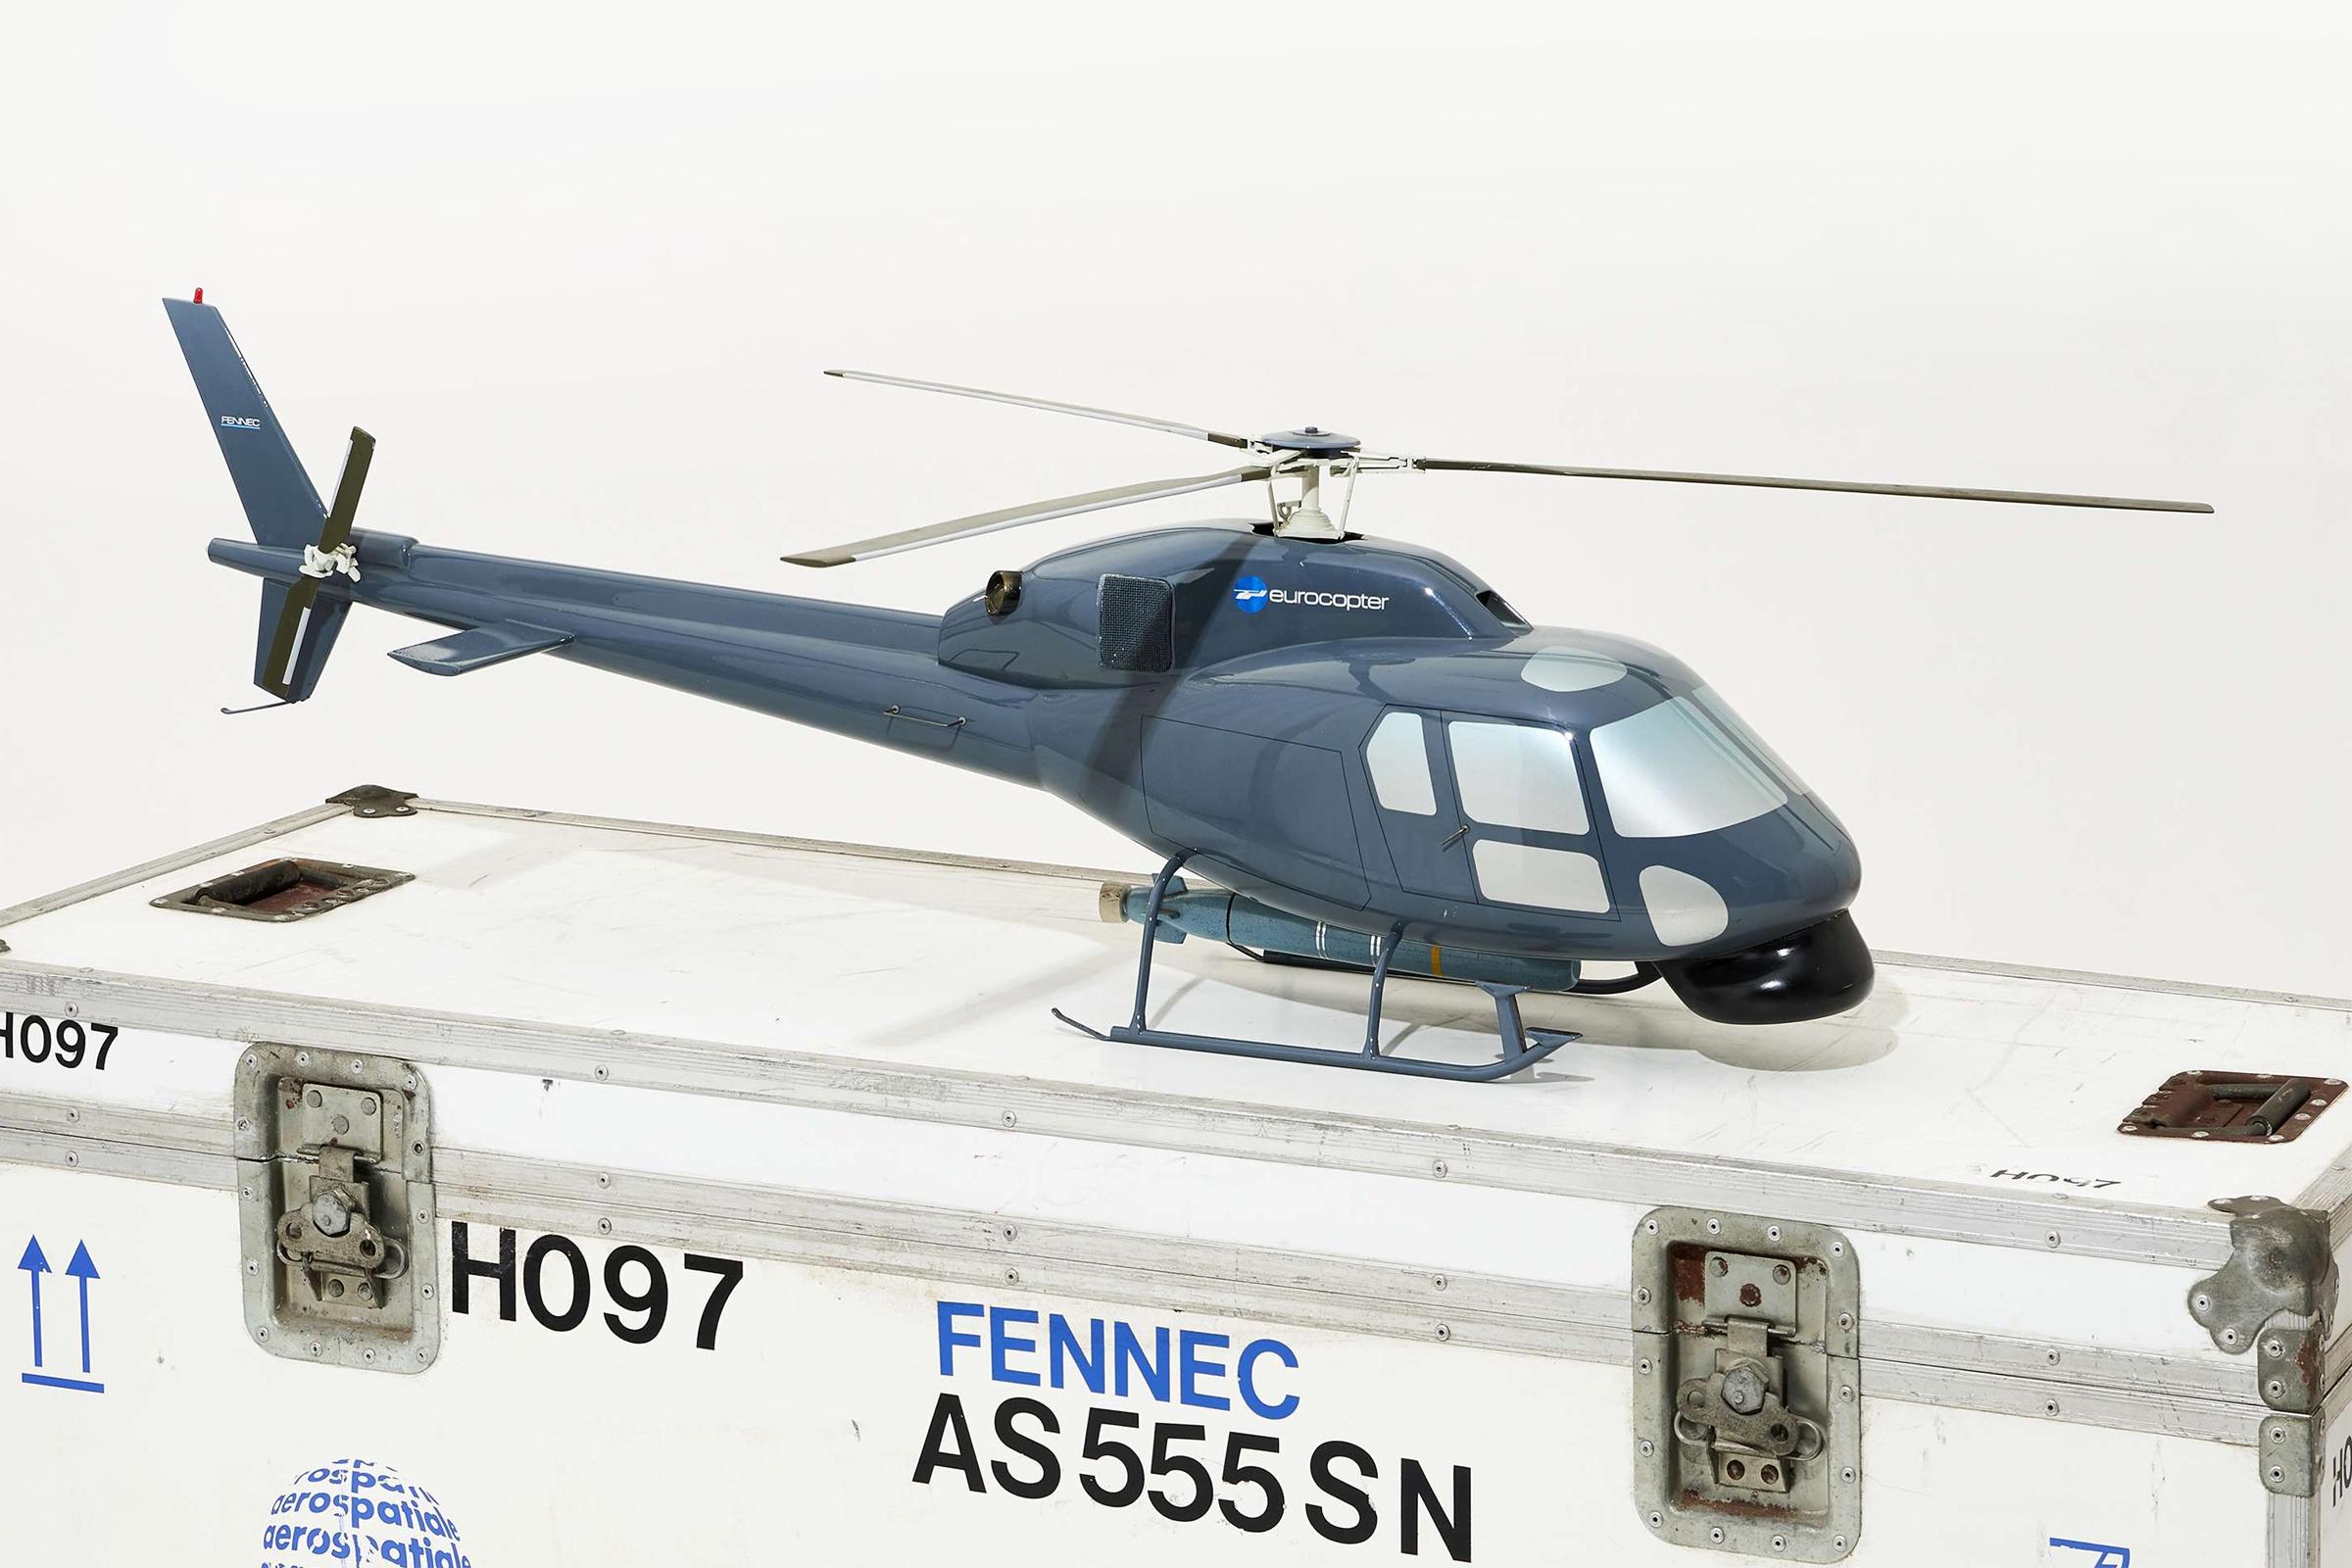 Modèle réduit d'hélicoptère Fennec AS555 avec boîte de transport,
eurocopter AS555 Fennec modèle de transport léger 
hélicoptère, échelle 1/10ème, en résine.
Dans une boîte de transport aérospatial.
Boîtier : L 146 x P 52 x H 75cm.
Modèle : L129 x P